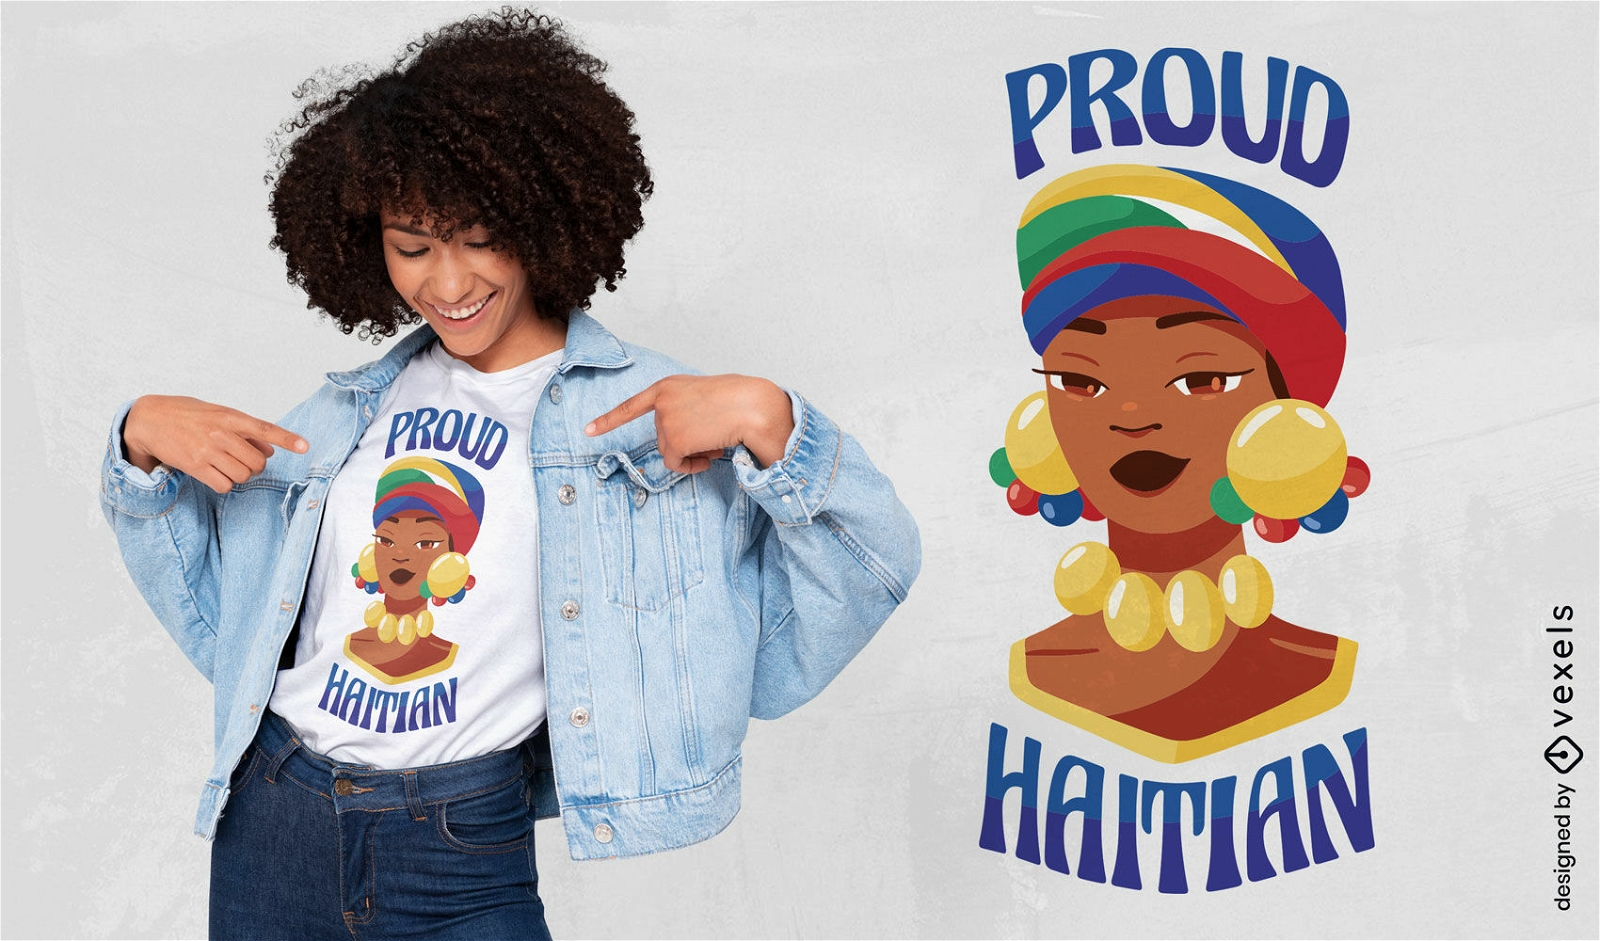 Diseño de camiseta de niña haitiana orgullosa